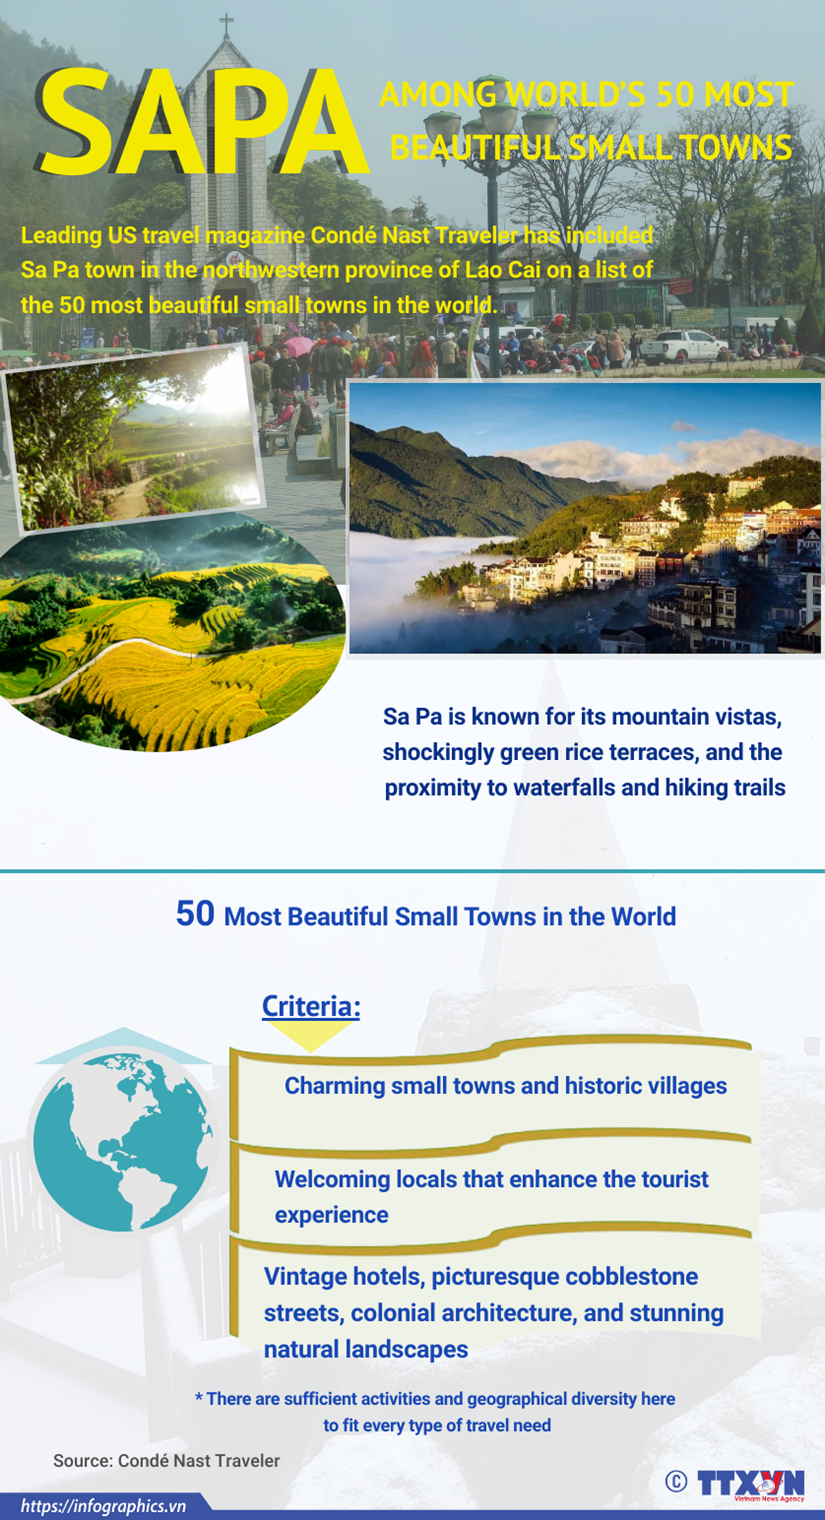 Sa Pa among world’s 50 most beautiful small towns hinh anh 1